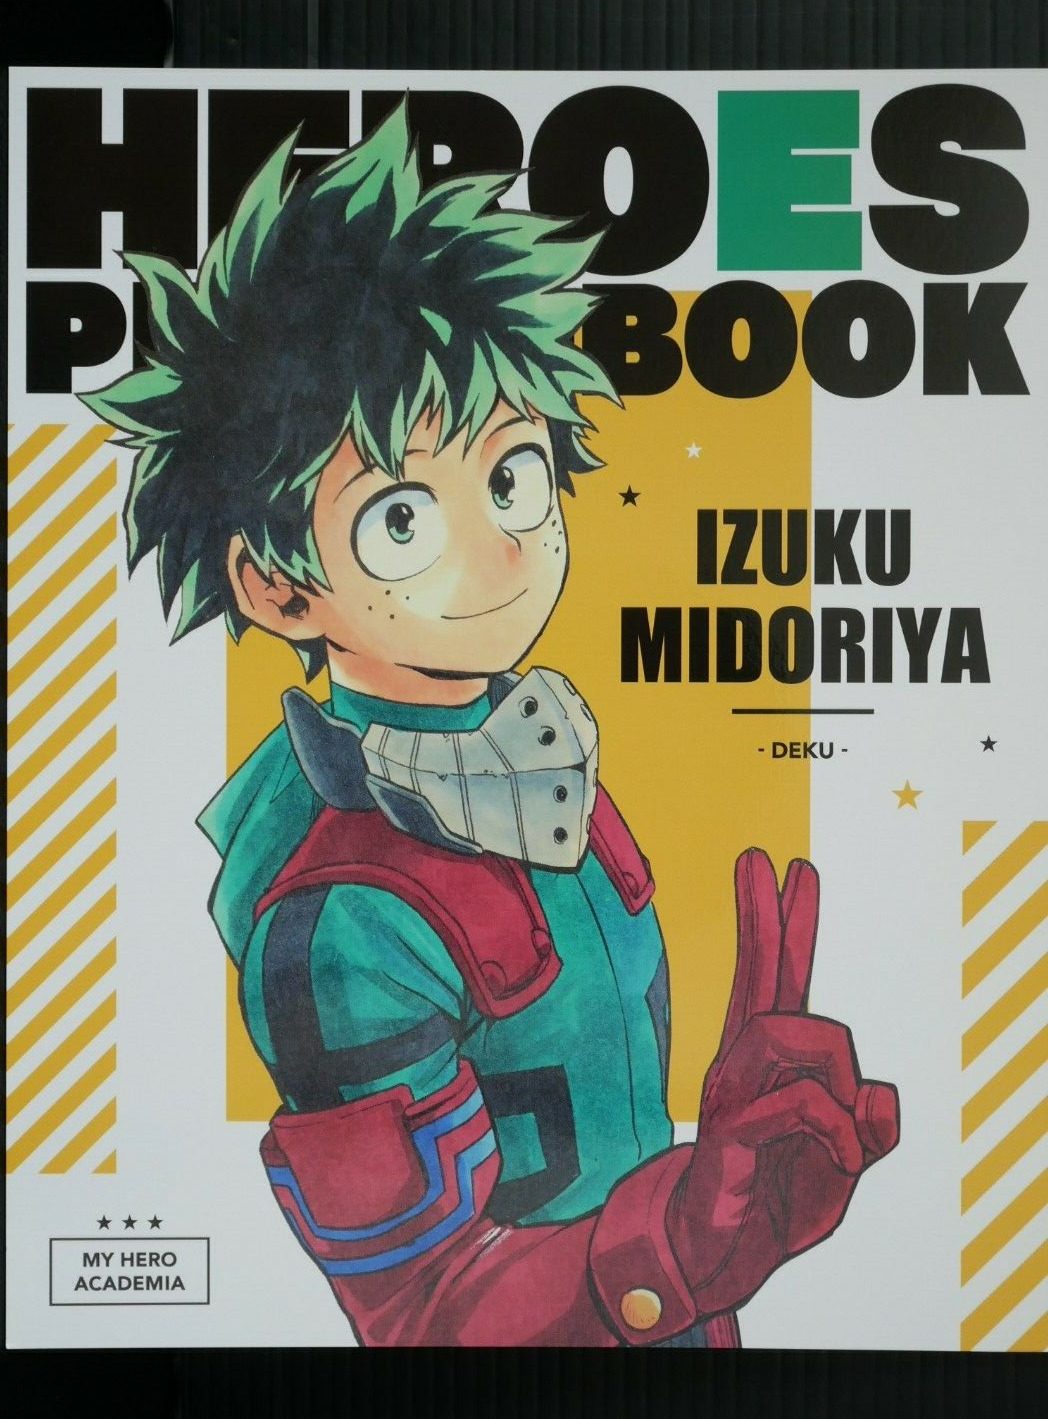 Kouhei Horikoshi: My Hero Academia Heroes Photo Book 'Izuku Midoriya / DEKU'